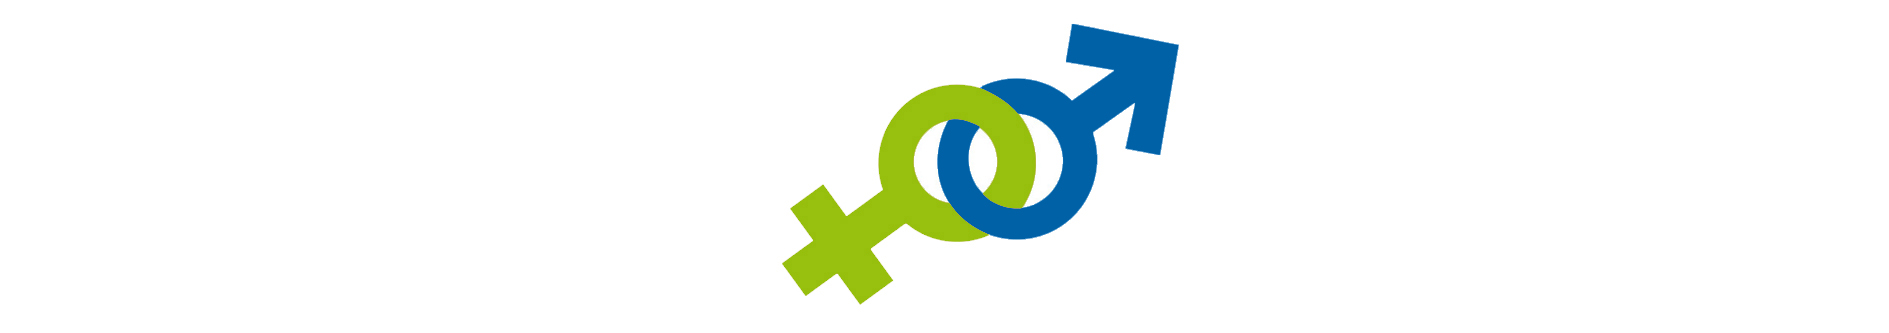 L’index égalité homme femme APA COMPETENCES en 2021 est de 79 points sur 100